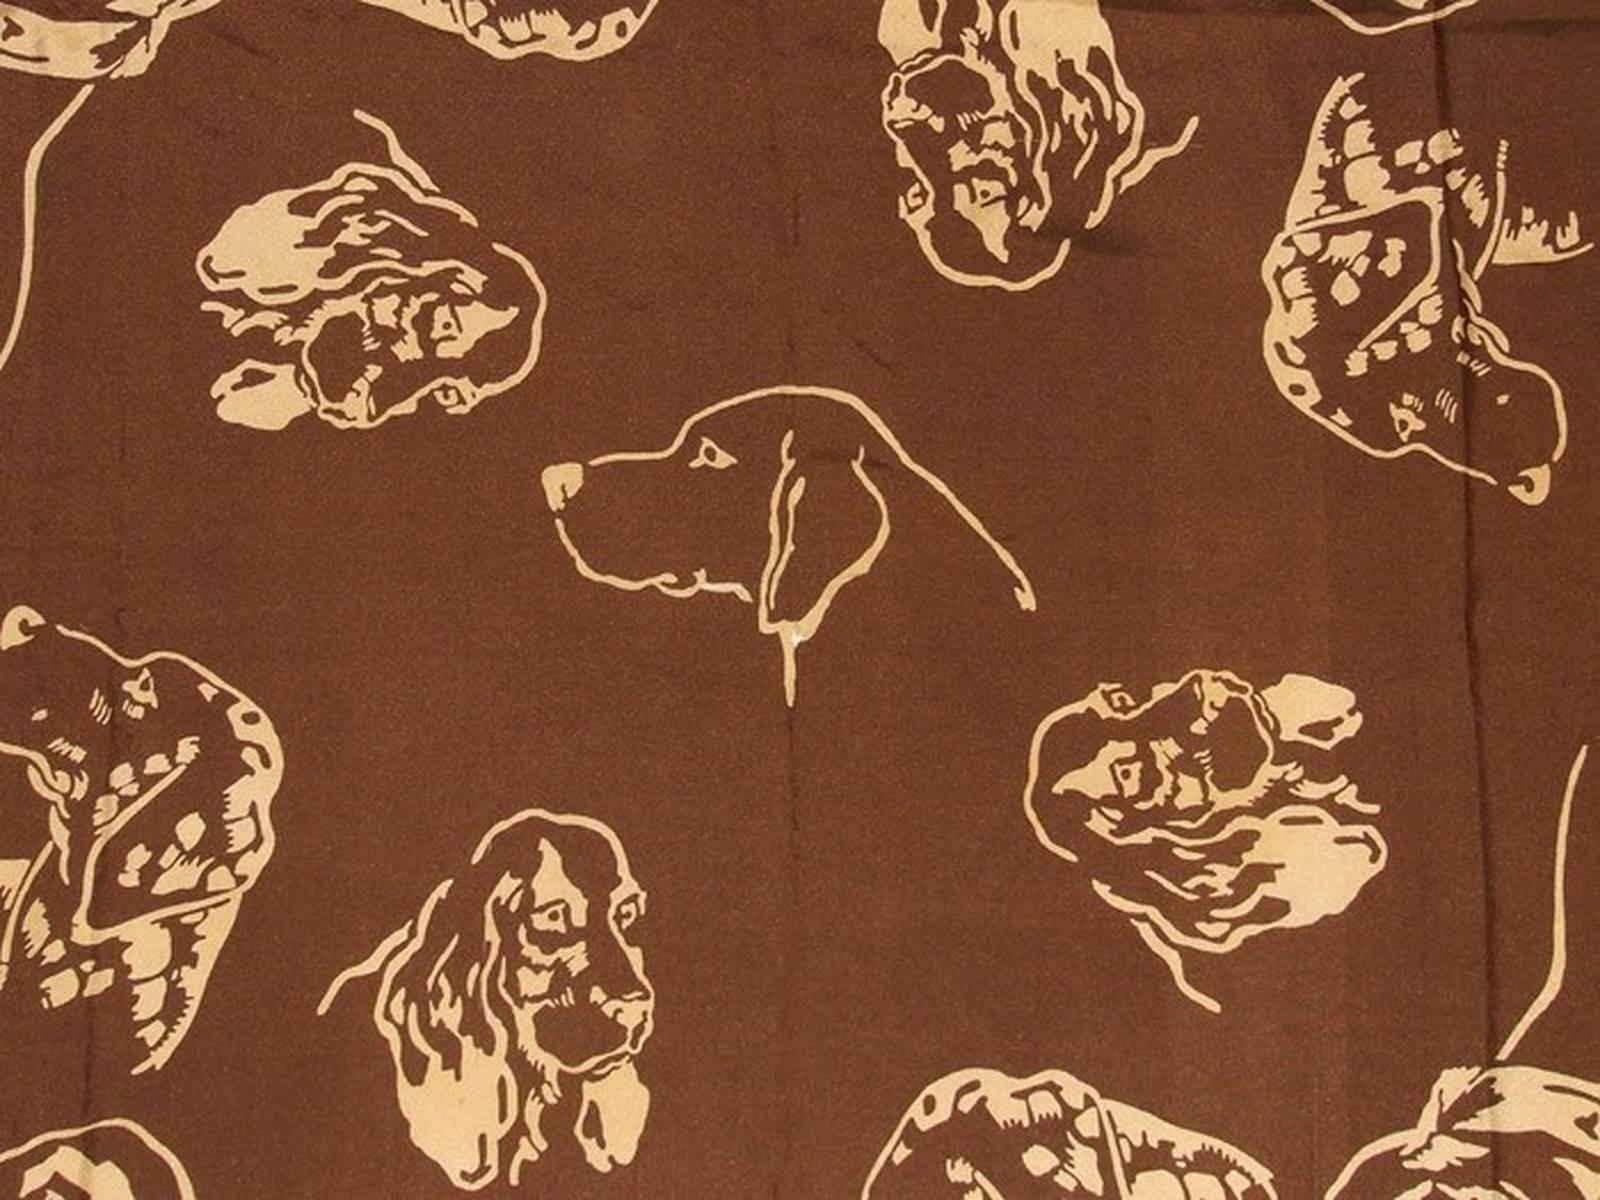 Erstaunlich authentischer Hermès-Schal

Muster: Cocker-Köpfe

Vintage-Schal von Jacques Nam aus dem Jahr 1938

Einer der seltensten, ein GRAIL

Hergestellt in Frankreich 

Hergestellt aus 100% Seide

Farbvarianten: Brauner Hintergrund, Beige